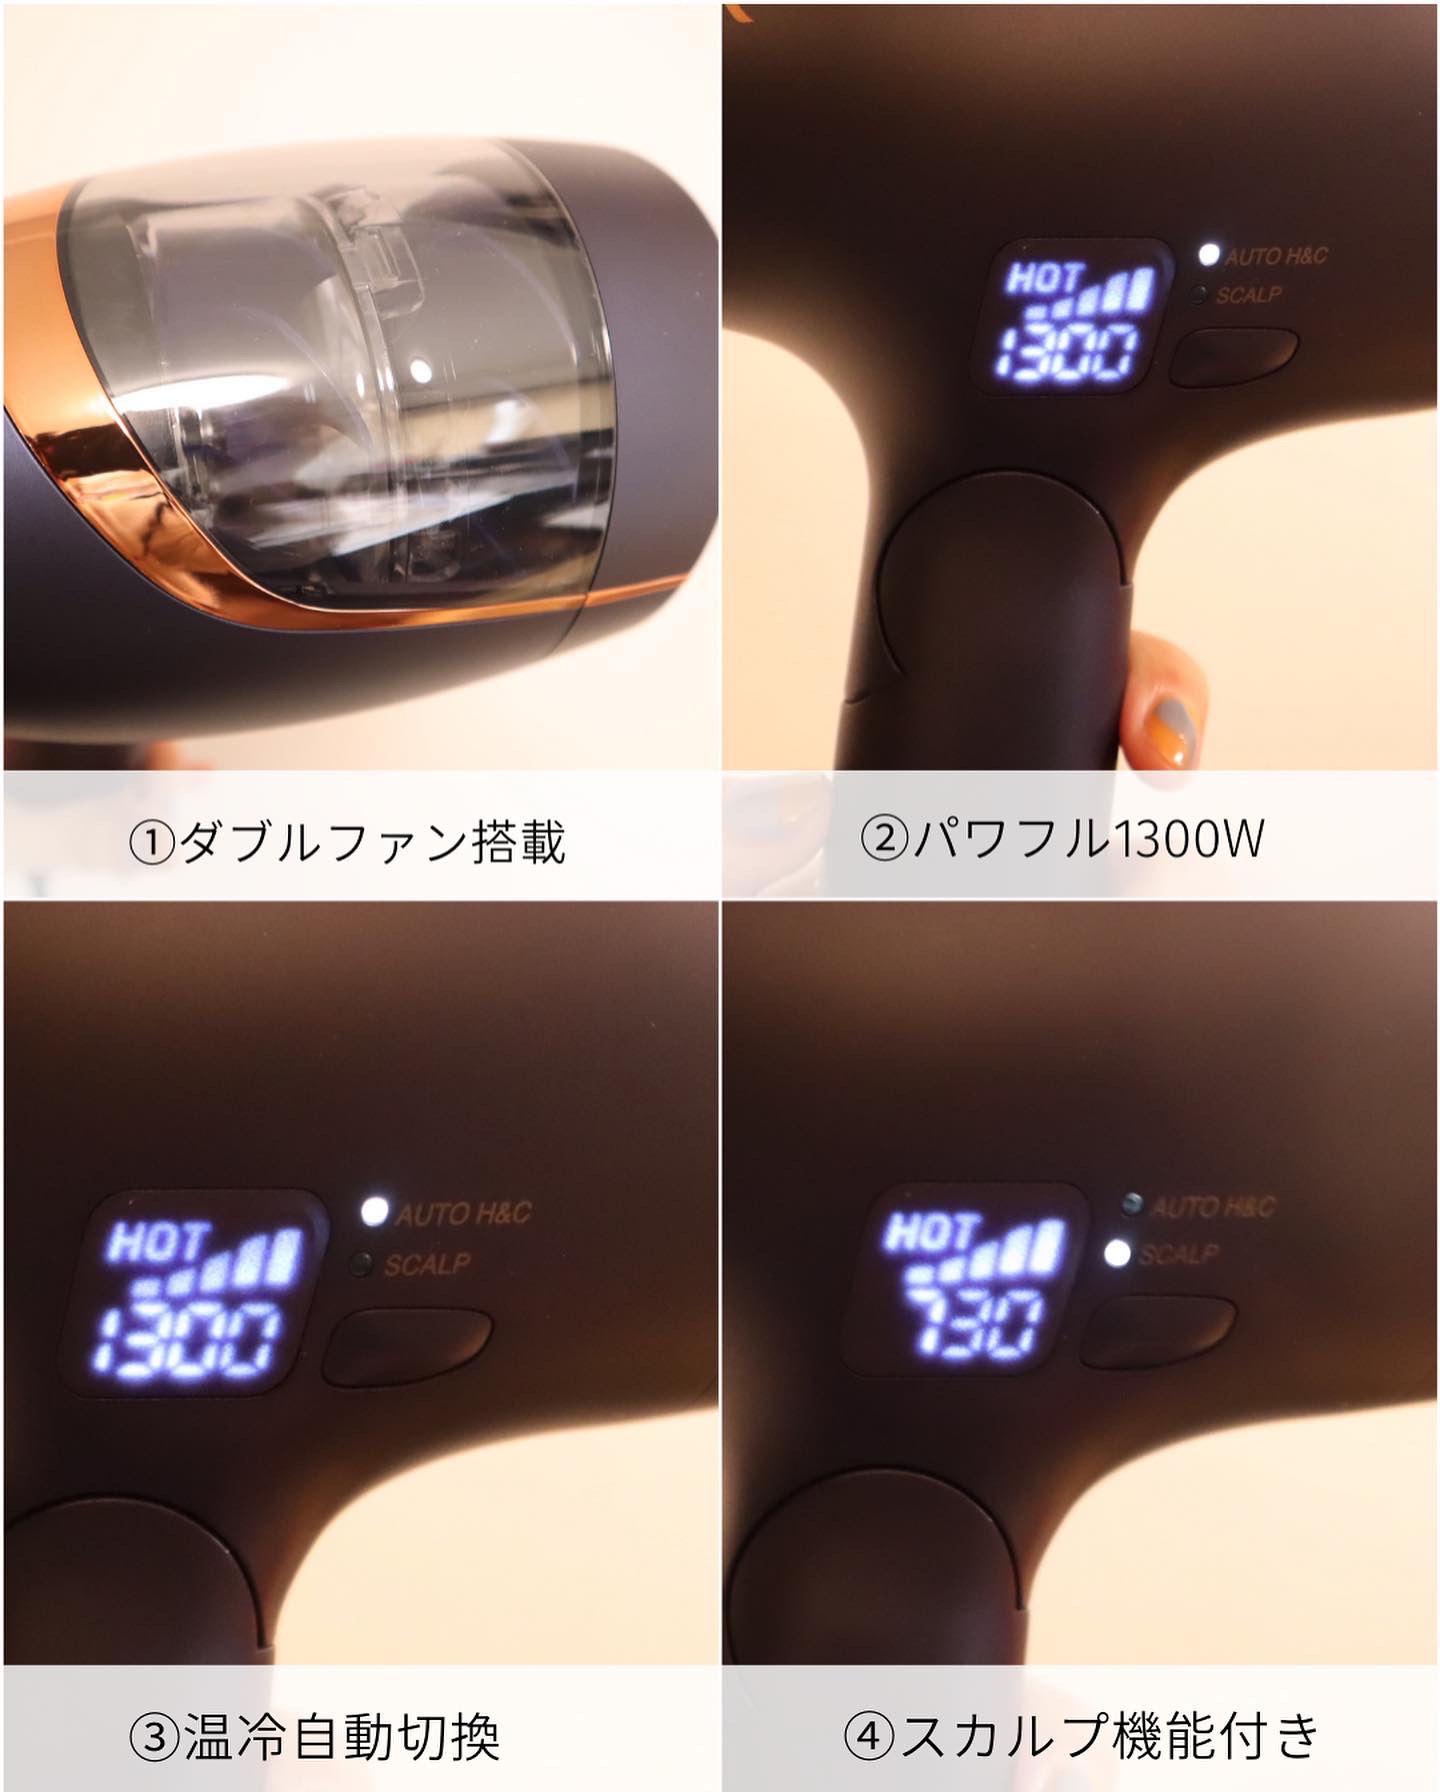 KOIZUMI(コイズミ) MONSTER ダブルファンドライヤー KHD-W790の良い点・メリットに関するみゆさんの口コミ画像3